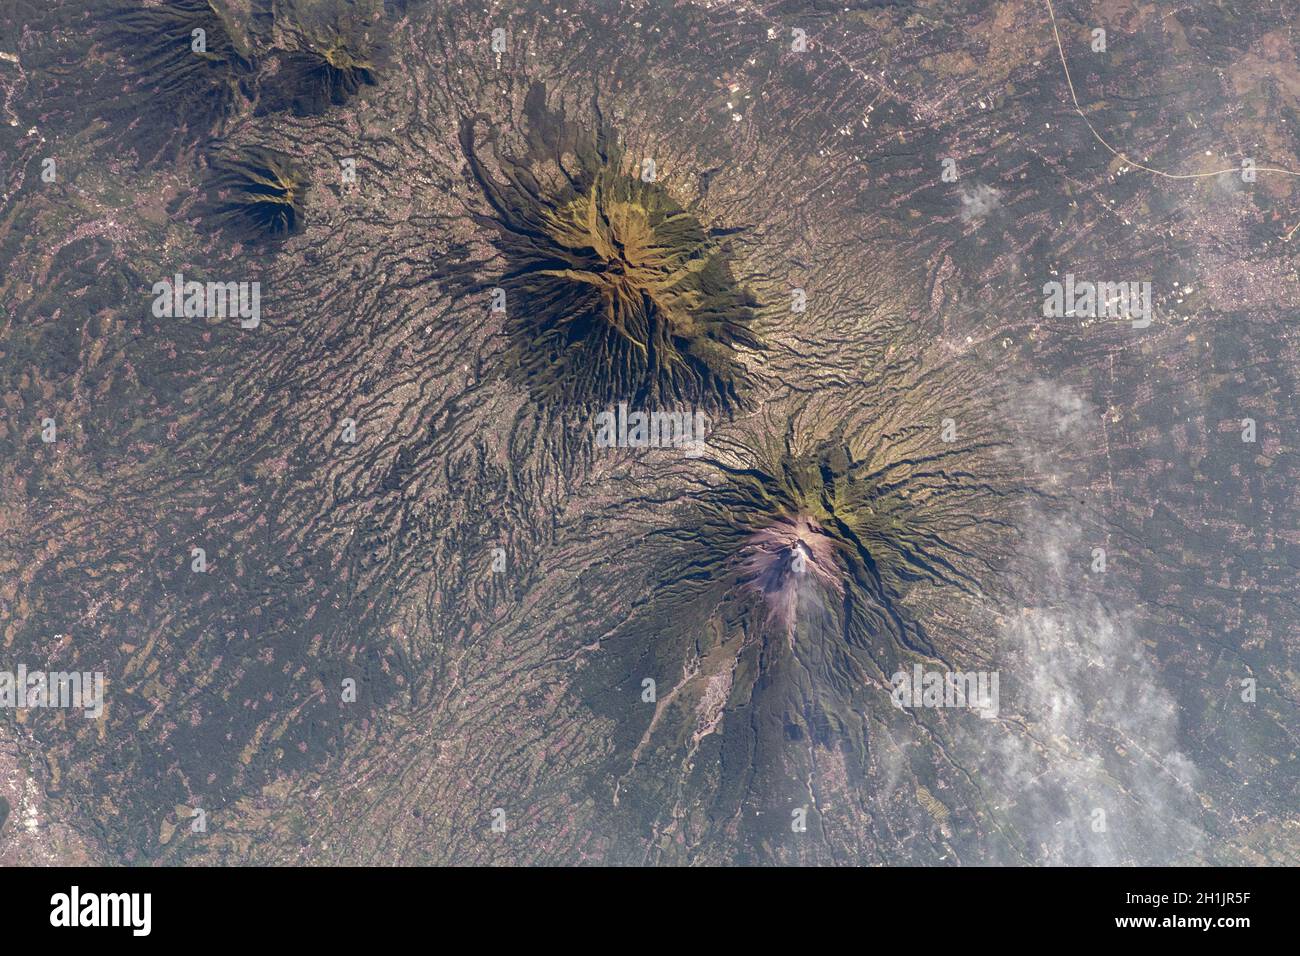 La Terra vista dalla Stazione spaziale Internazionale: Un Monte Merapi (inferiore) e Monte Merbabu (superiore) fumando, Giava, Indonesia, 10 maggio 2021. Il Monte Merapi è un vulcano molto attivo nella Giava Centrale. Una versione ottimizzata e migliorata di un'immagine NASA / credito NASA. Foto Stock